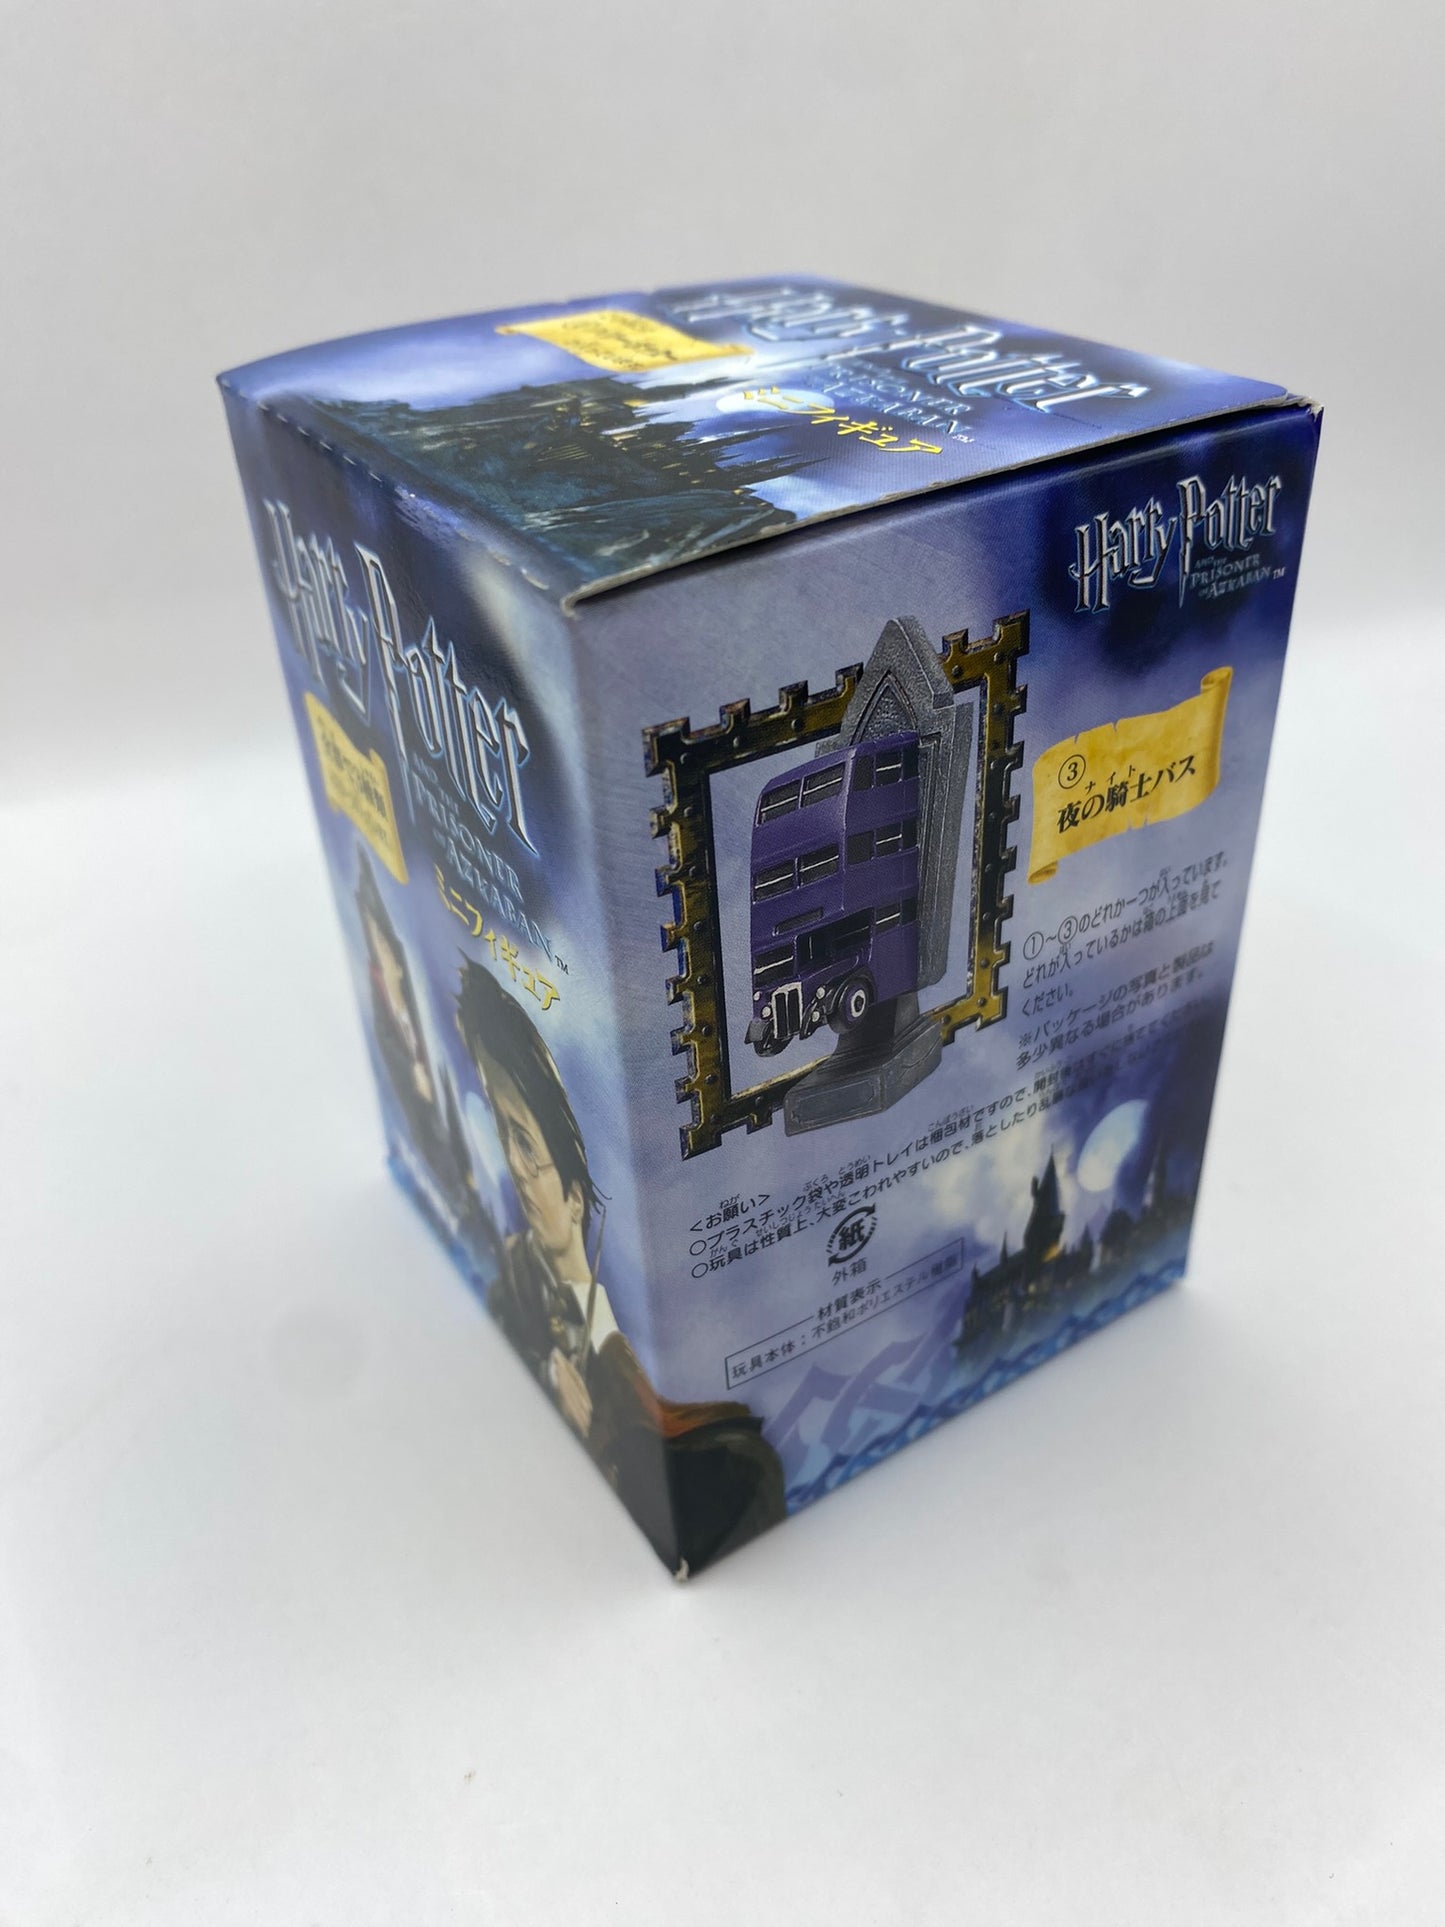 Harry Potter & The Prisoner of Azkaban Tomy Blind Box Figure Boxed 2005 Japan